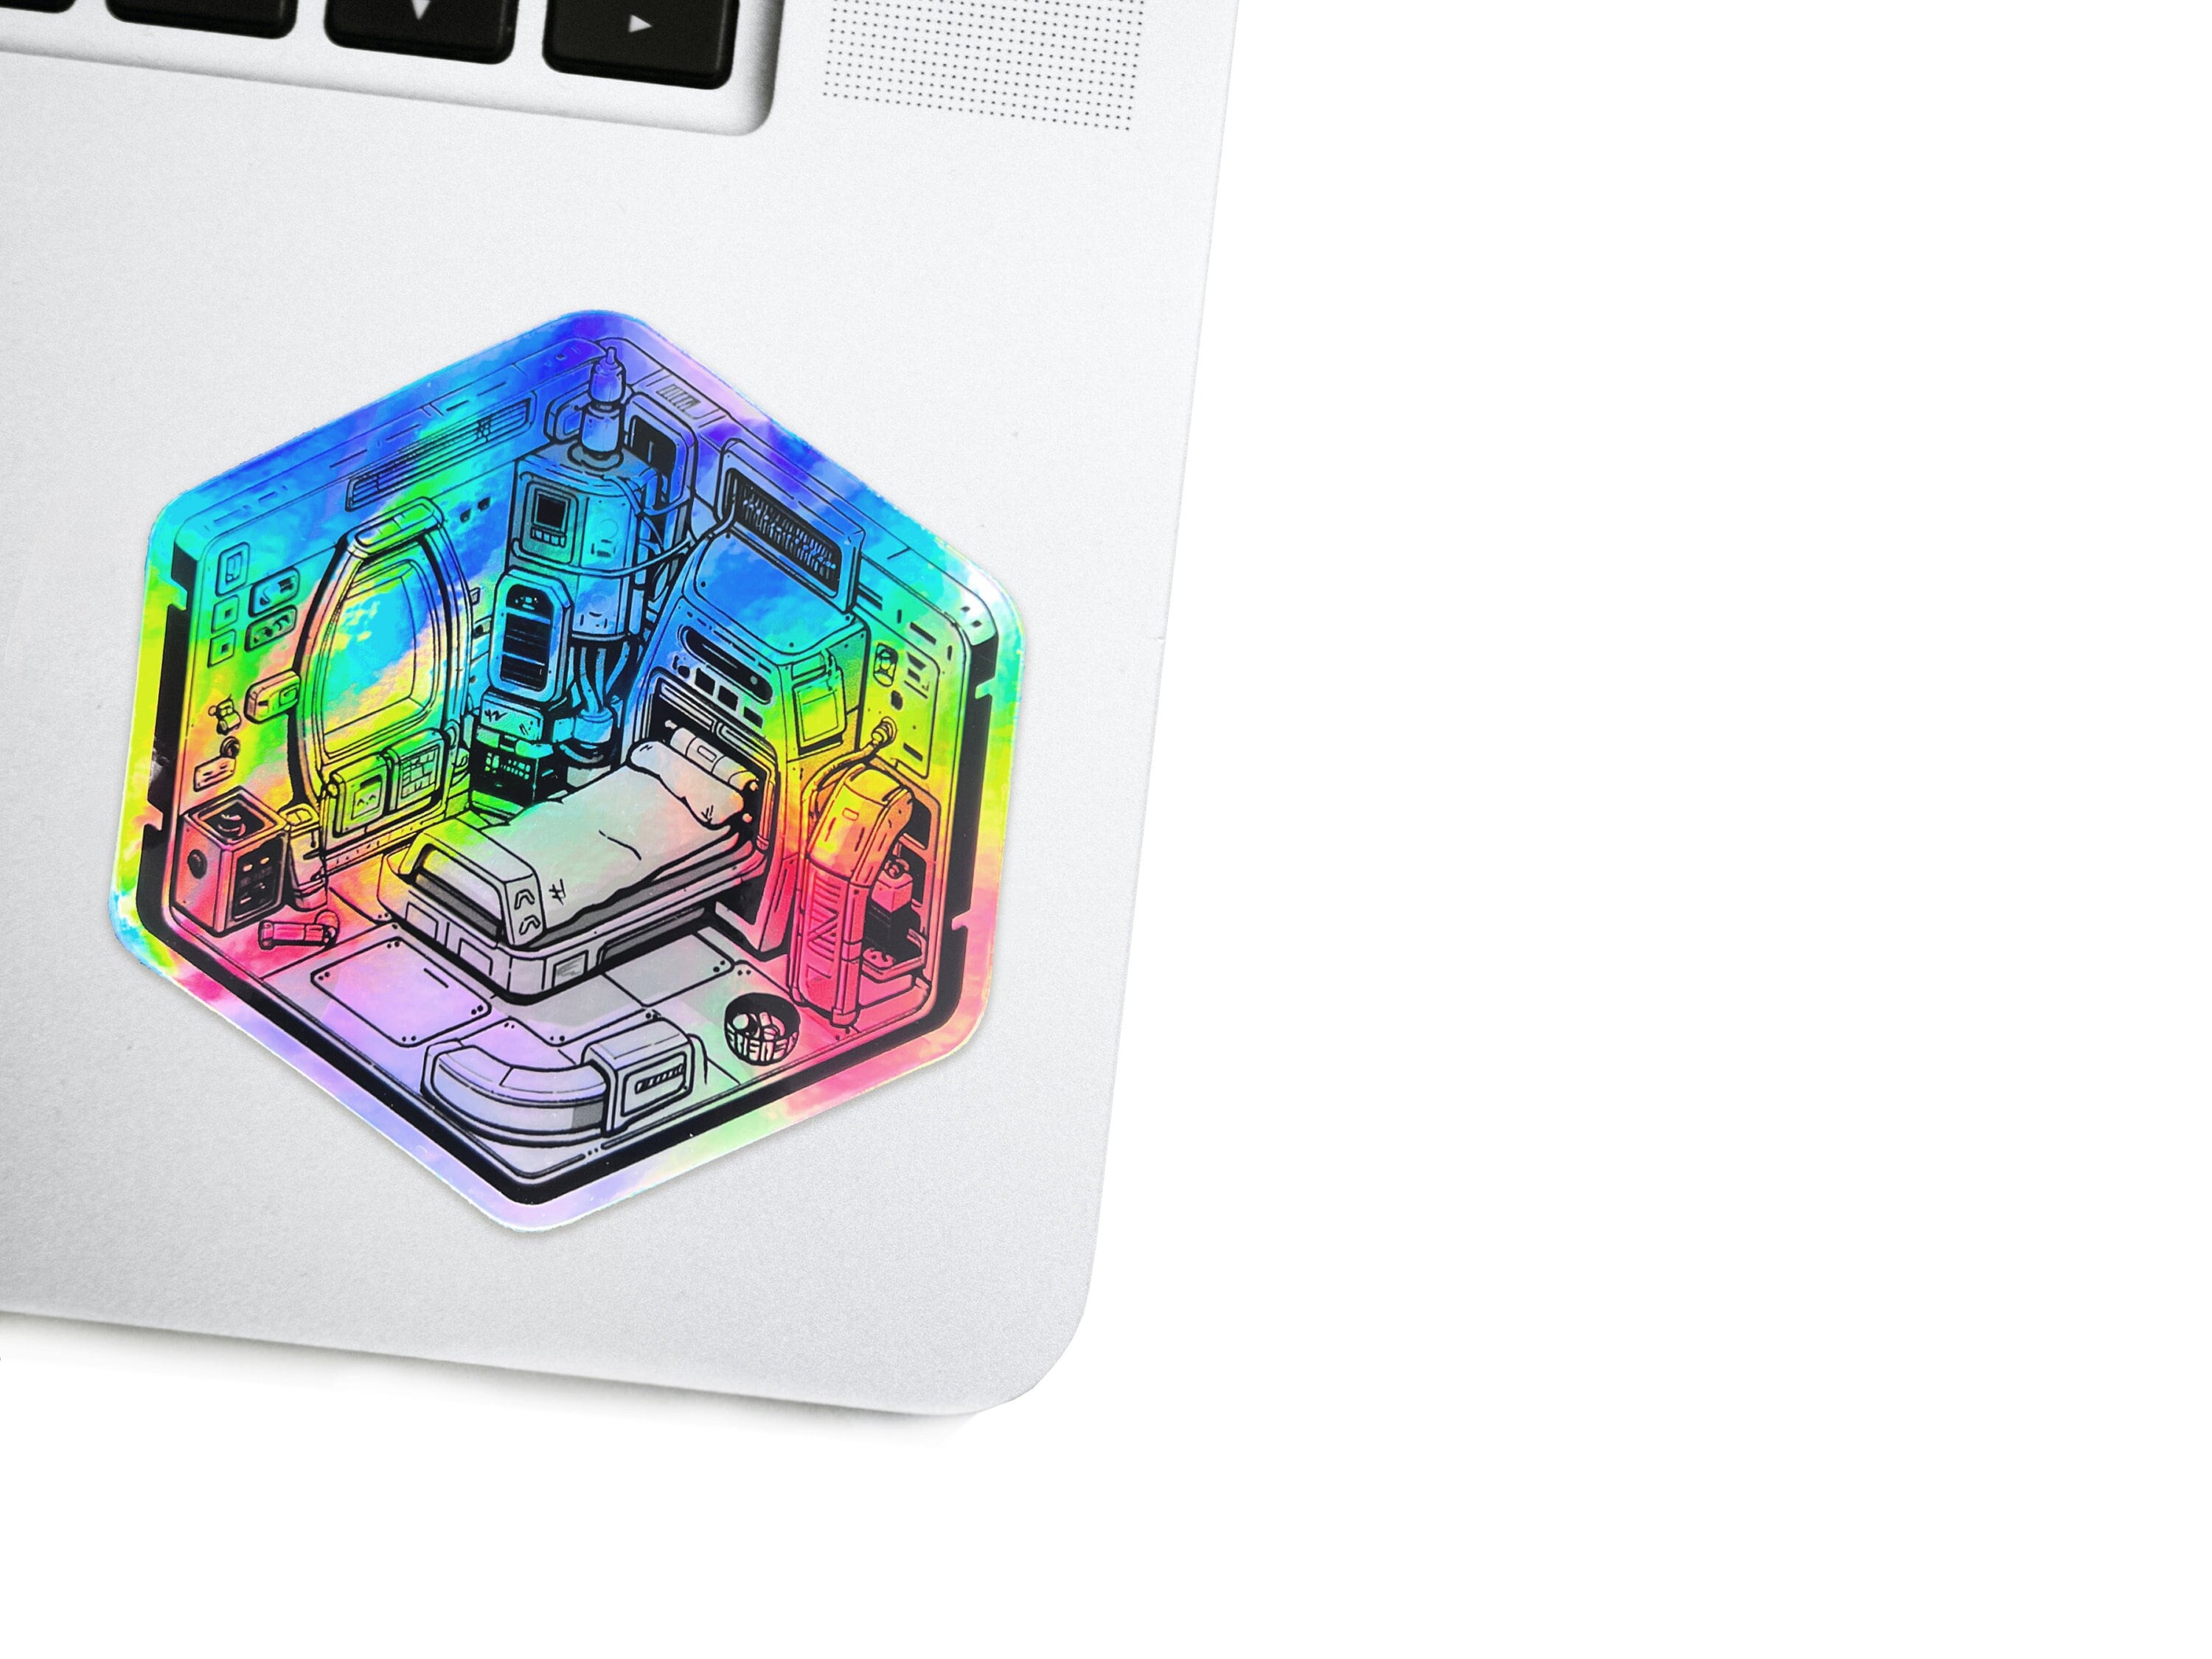 Isometric Cyberpunk Holographic Vinyl Decal - Sci-fi Crew Quarters Astropunk Laptop Sticker - Futuristic Glitch / Space Bumper Sticker